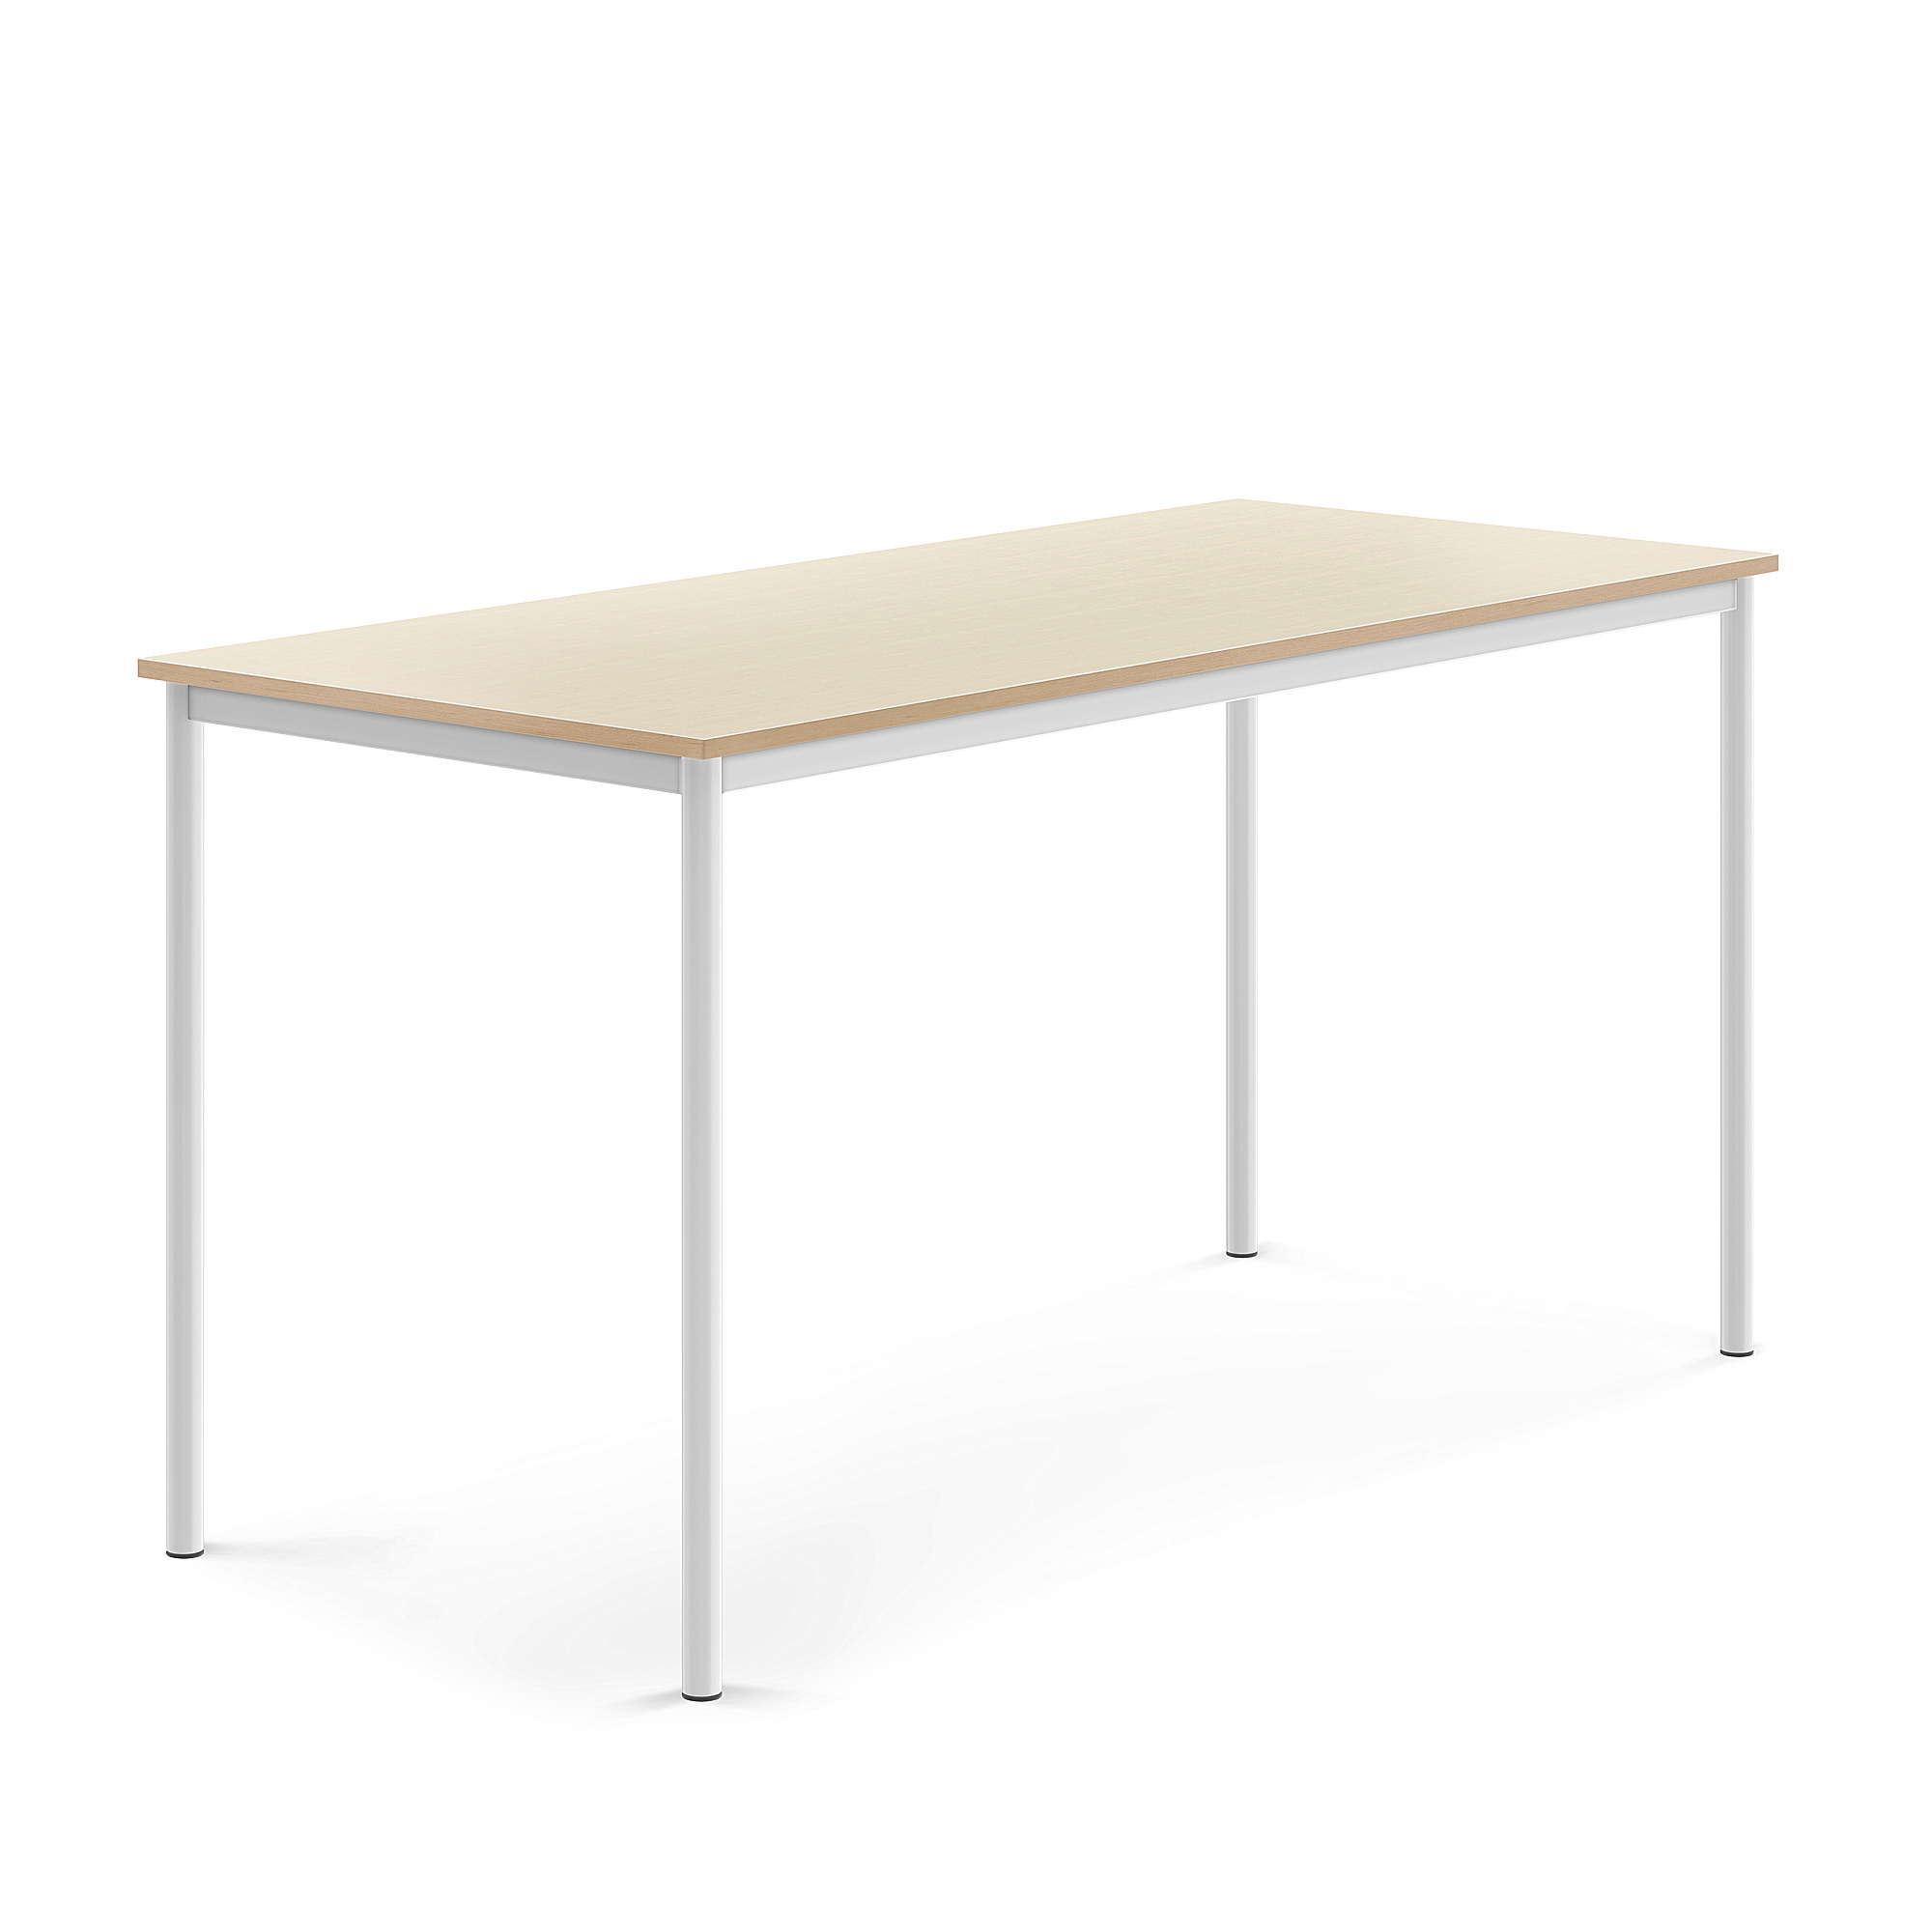 Stůl BORÅS, 1800x800x900 mm, bílé nohy, HPL deska, bříza